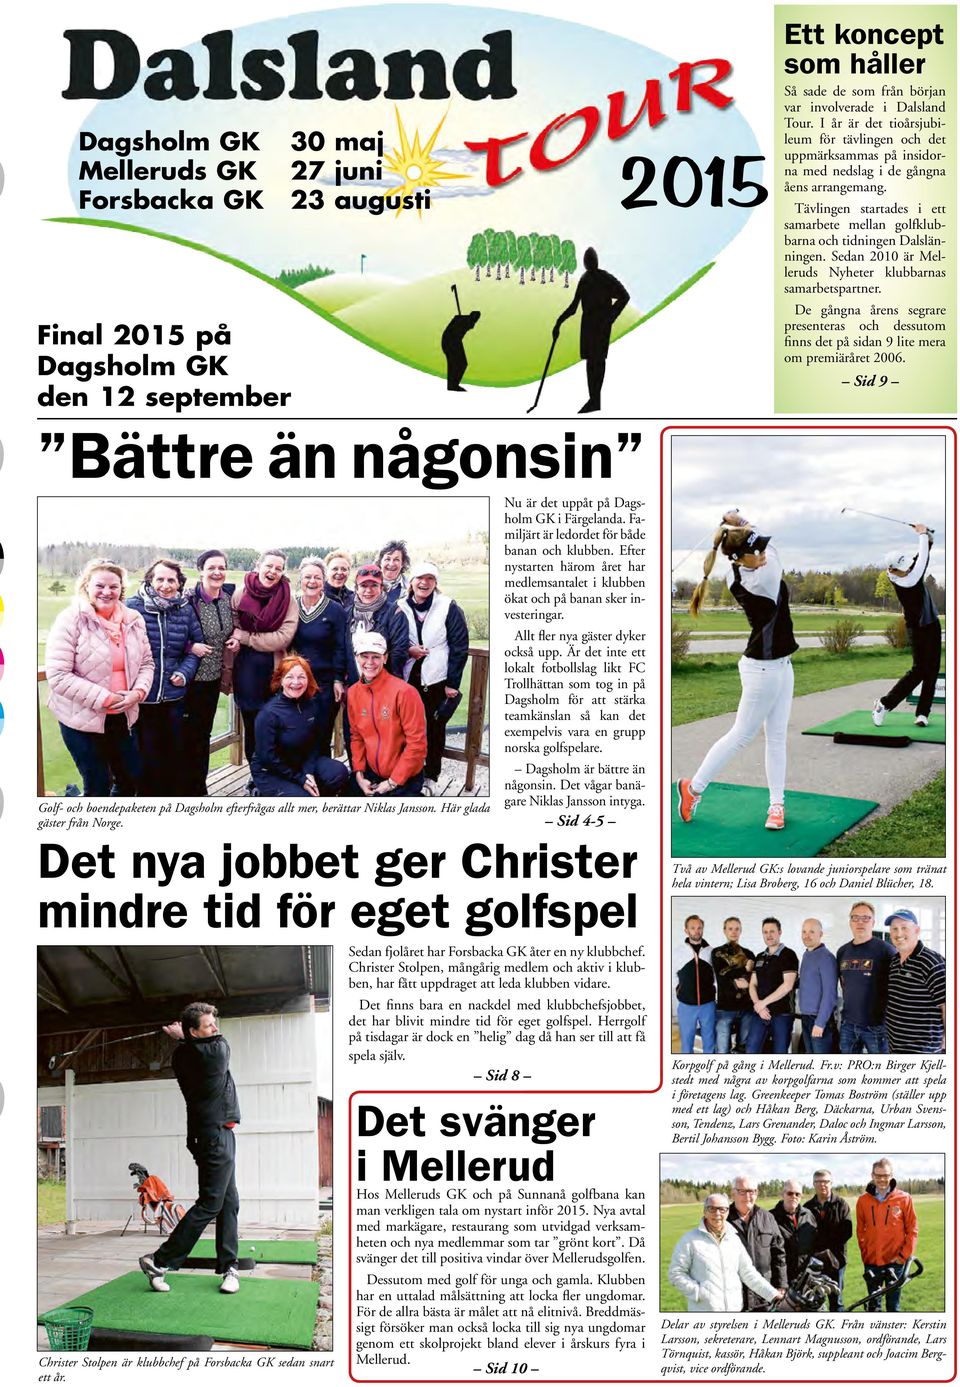 Tävlingen startades i ett samarbete mellan golfklubbarna och tidningen Dalslänningen. Sedan 2010 är Melleruds Nyheter klubbarnas samarbetspartner.